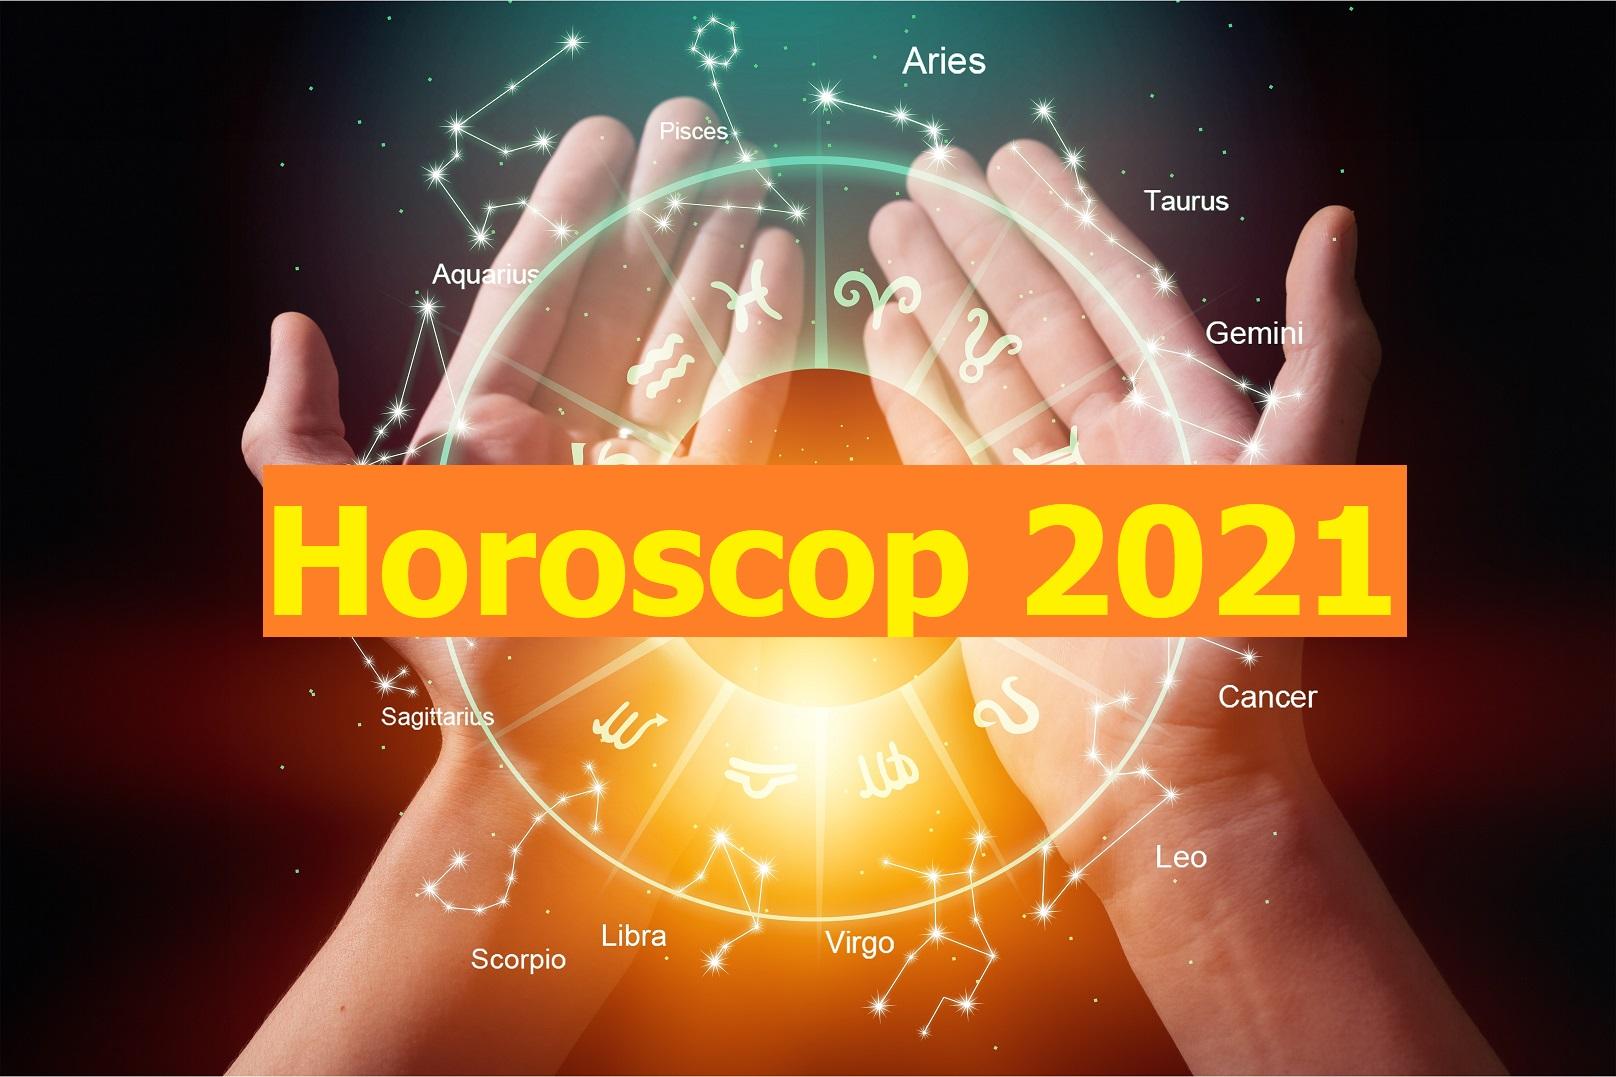 Horoscop 2021 previziuni. Anul 2021 o să fie cel mai bun pentru aceste 3 zodii! Ce surprize urmează